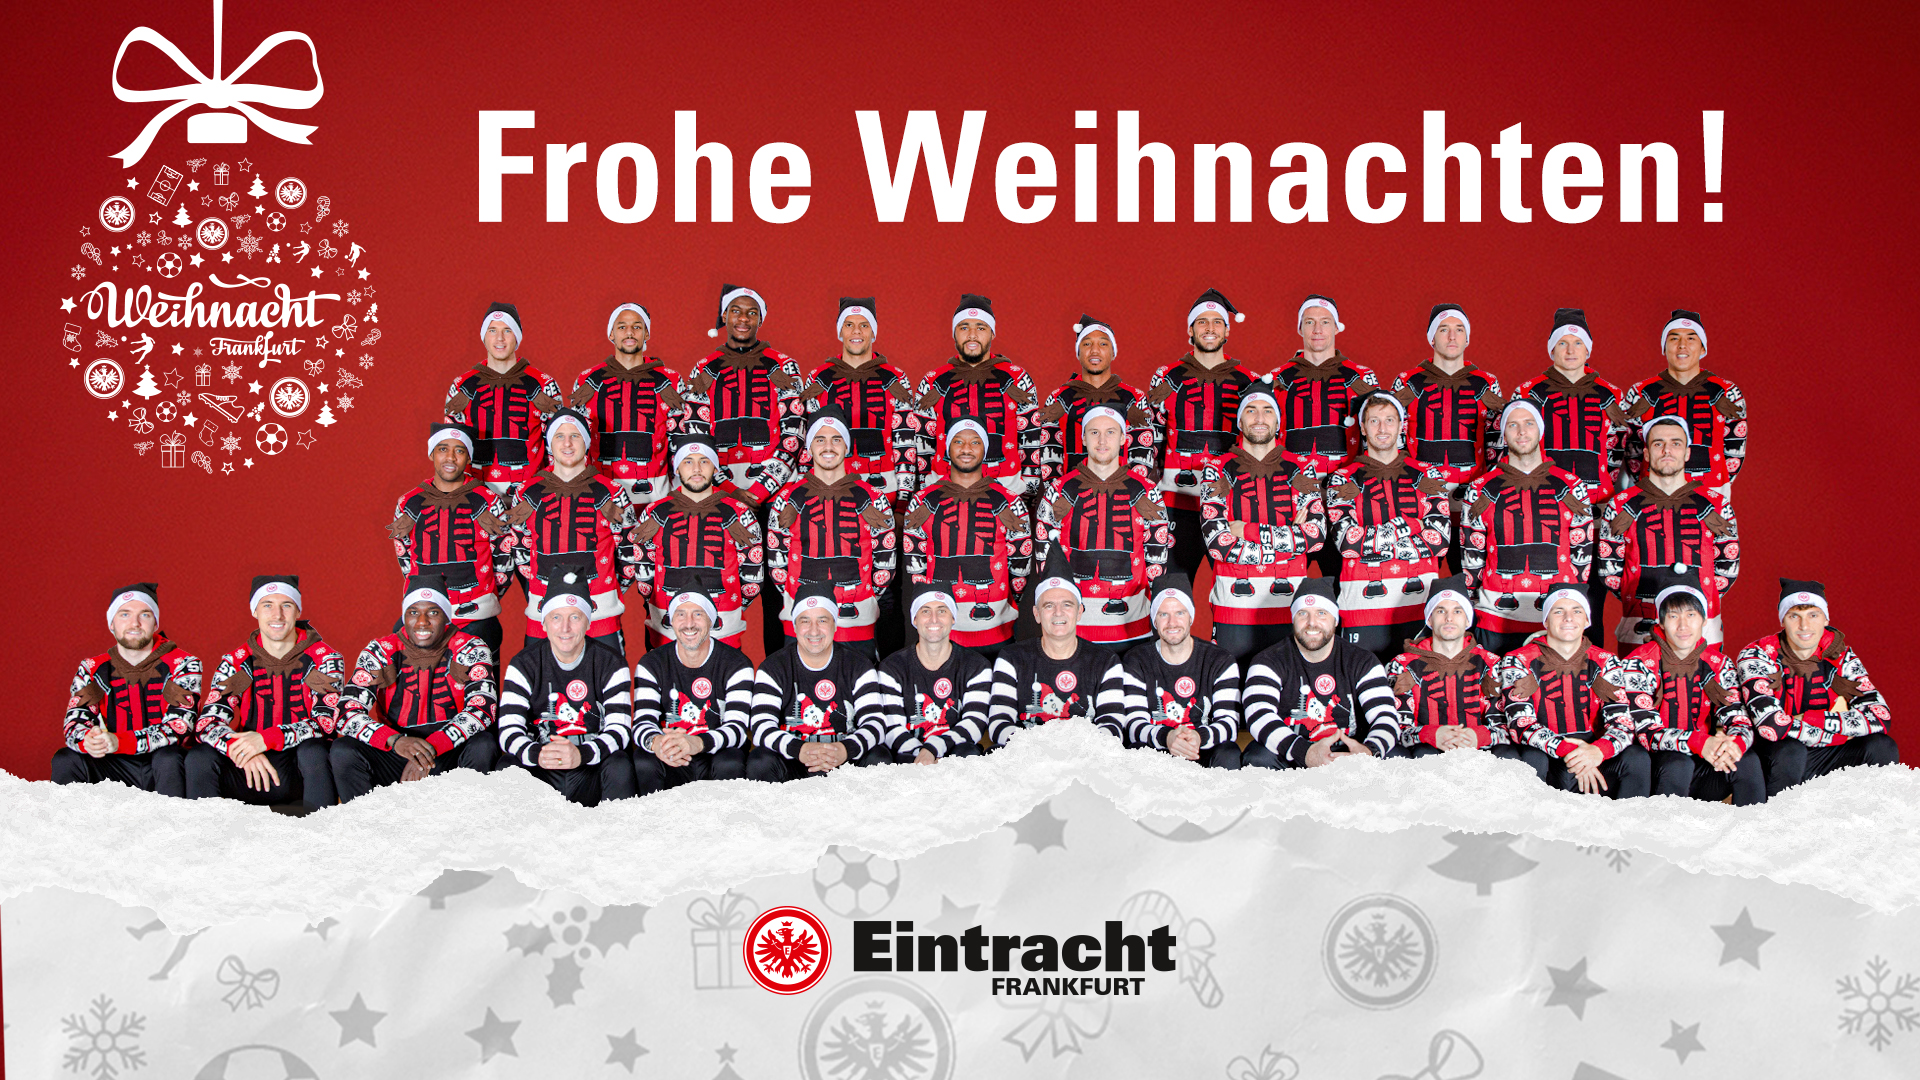 Eintracht Frankfurt wünscht frohe Weihnachten! - Eintracht Frankfurt Profis